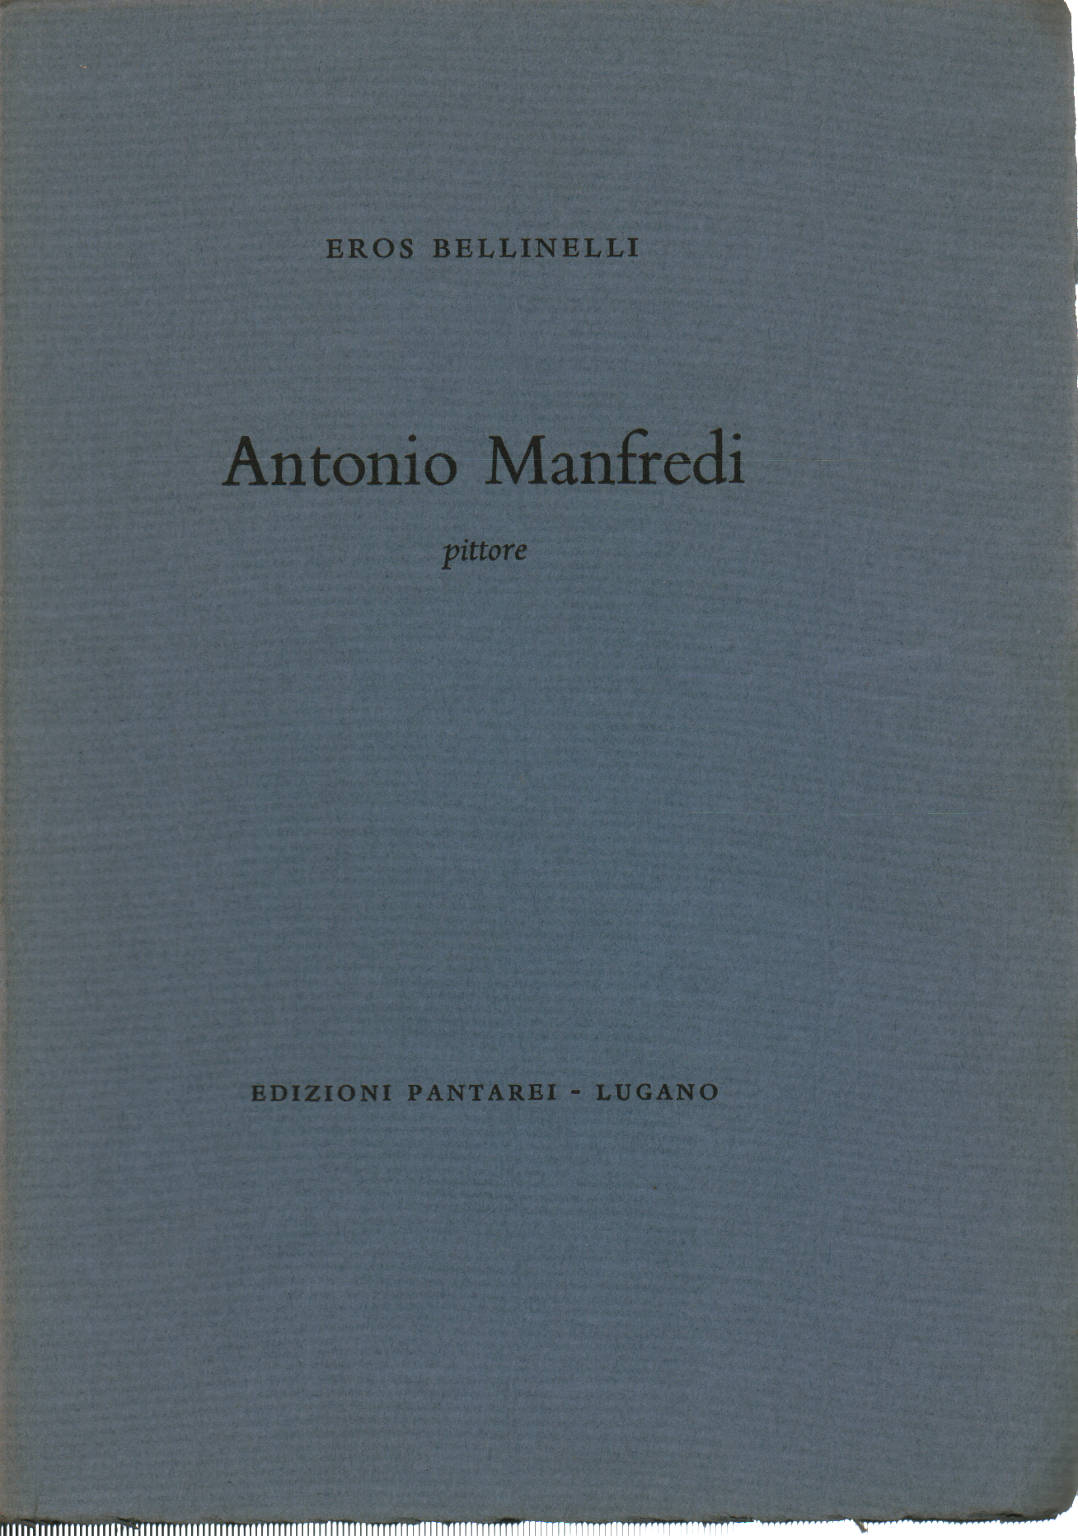 Antonio Manfredi, Eros Bellinelli